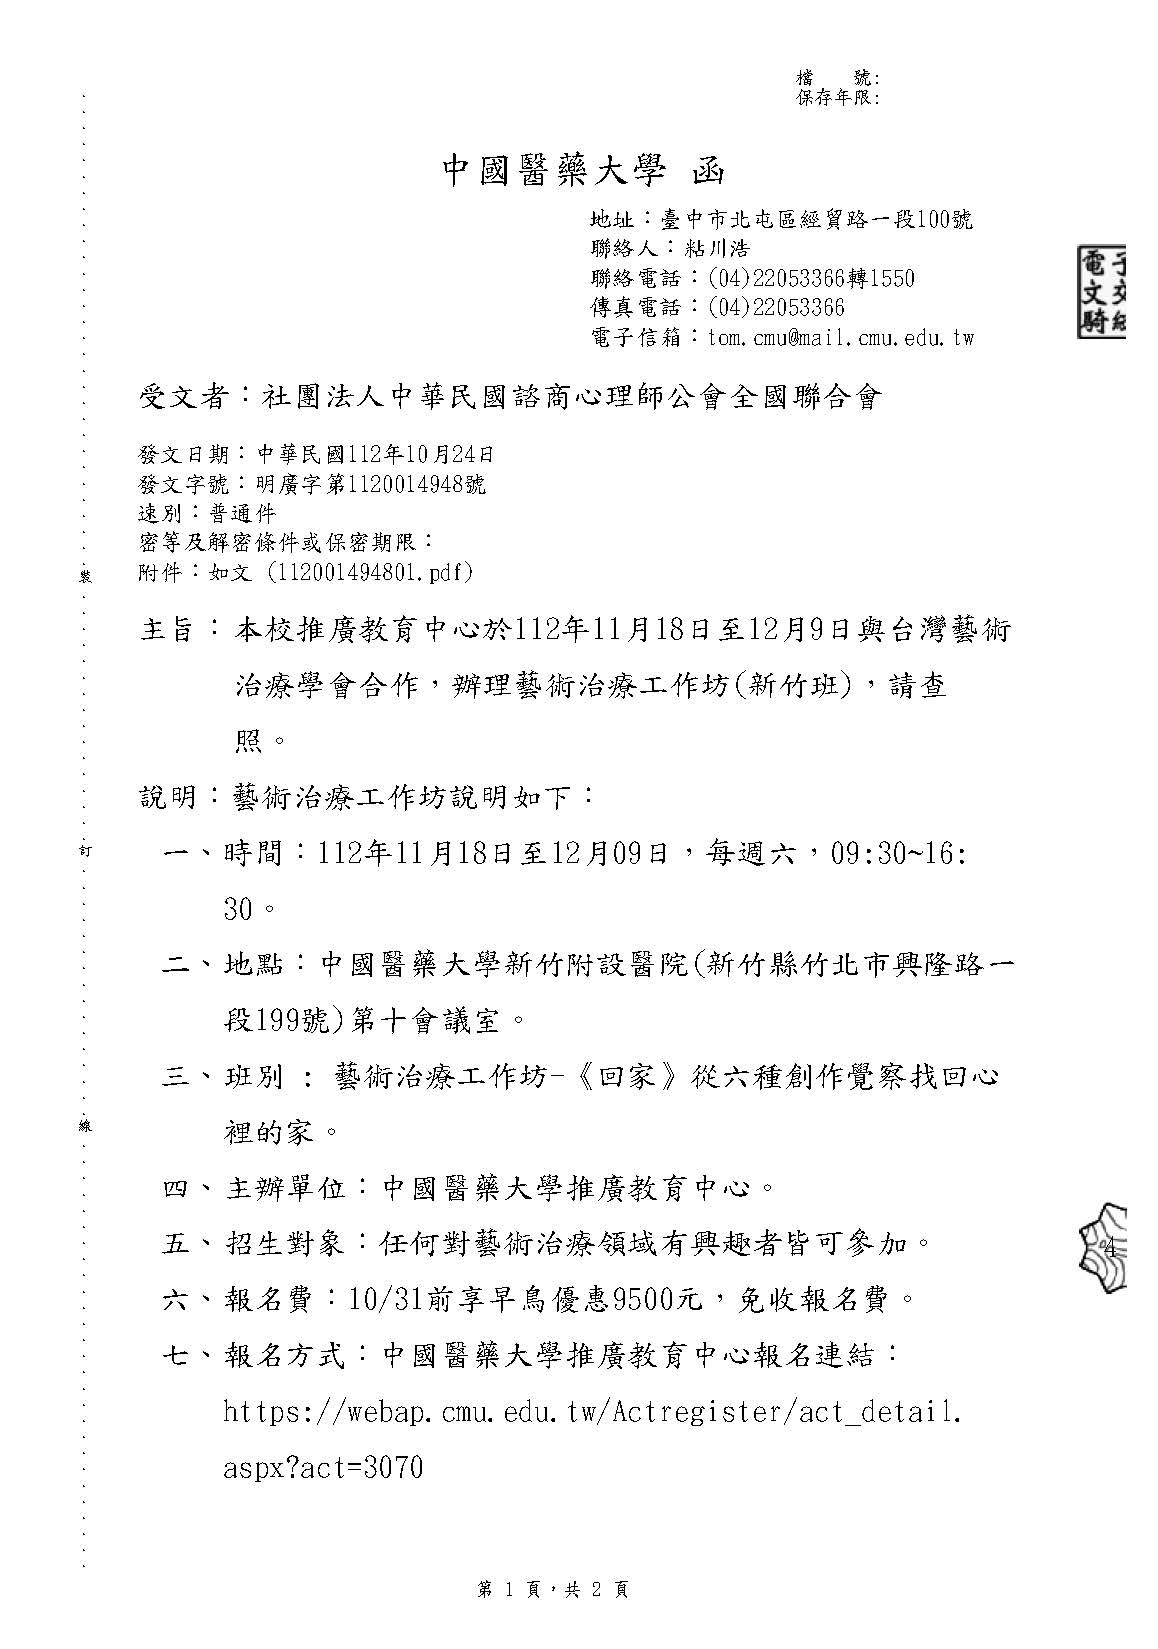 1121024 中國醫藥大學 本校推廣教育中心於112年11月18日至12月9日與台灣藝術治療學會合作辦理藝術治療工作坊新竹班請查照 頁面 1